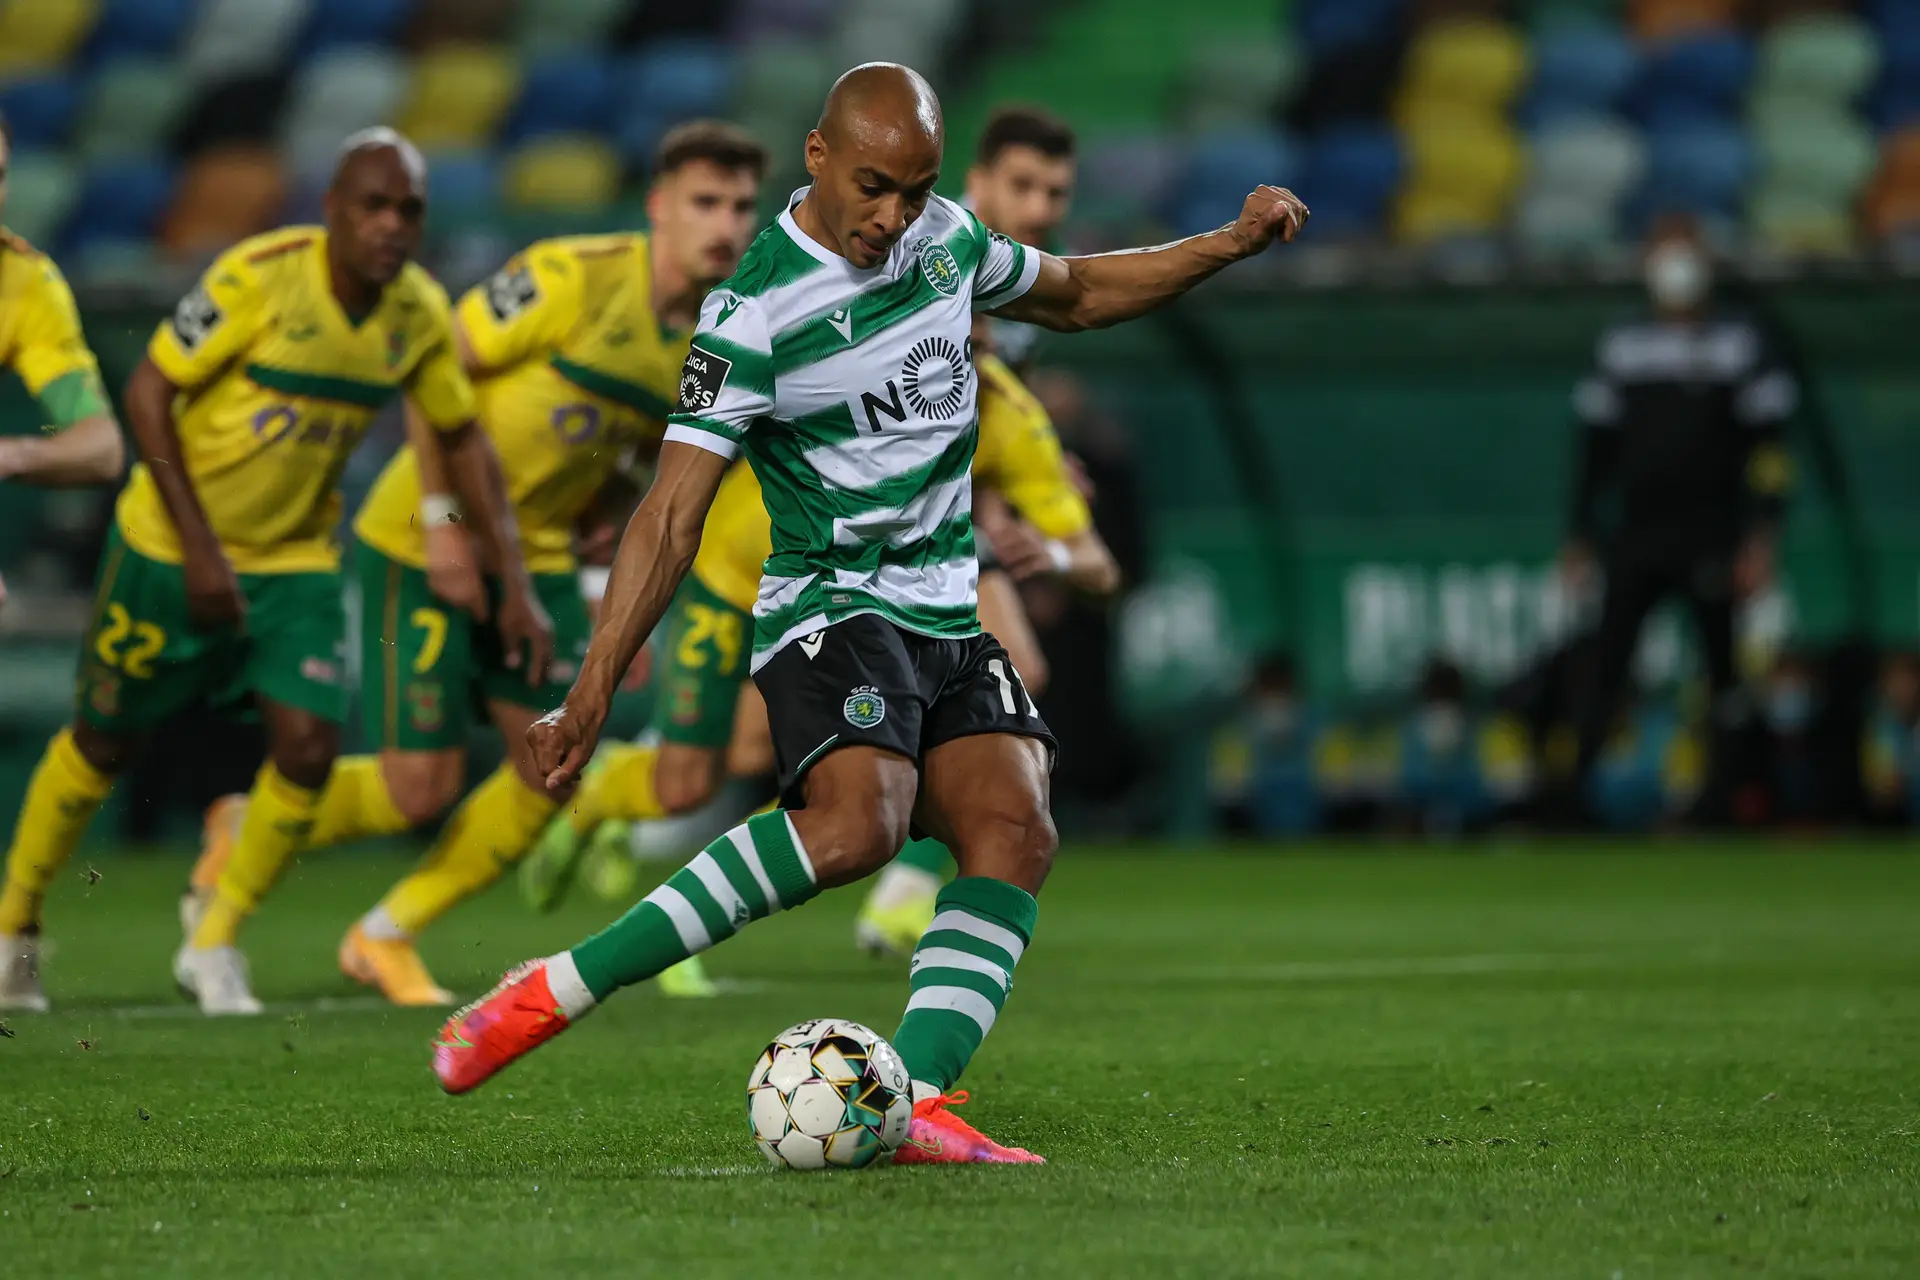 Sporting com jogo de risco em Guimarães pode alargar vantagem na I